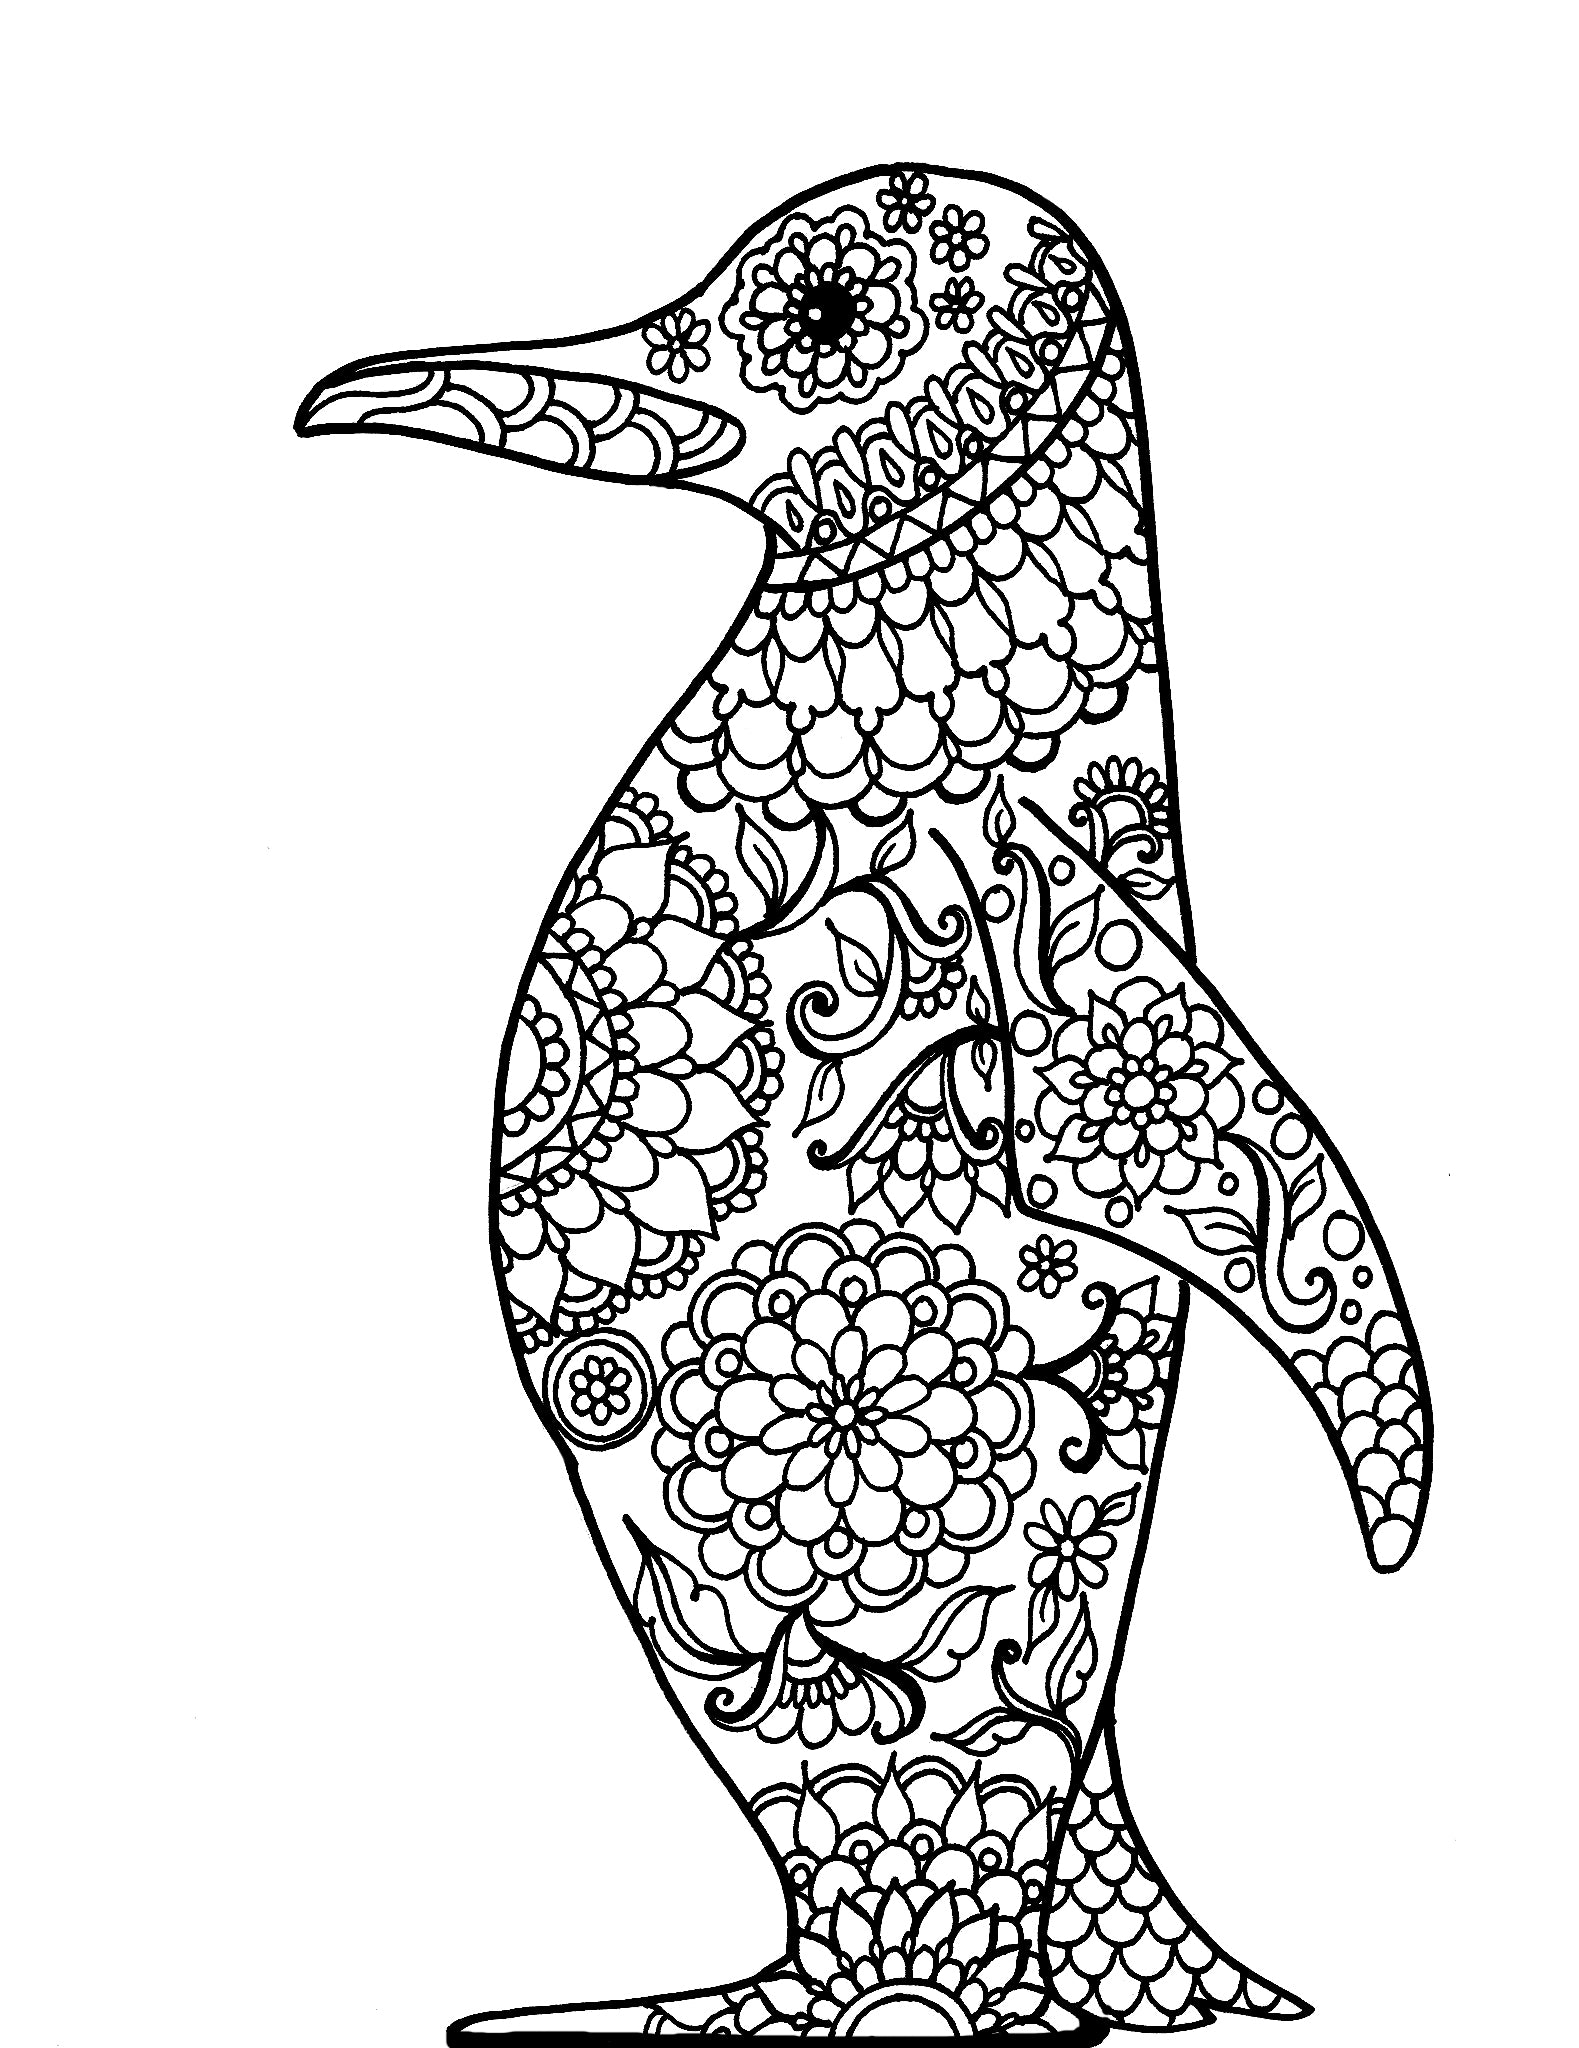 Mandala Penguin - You-Color